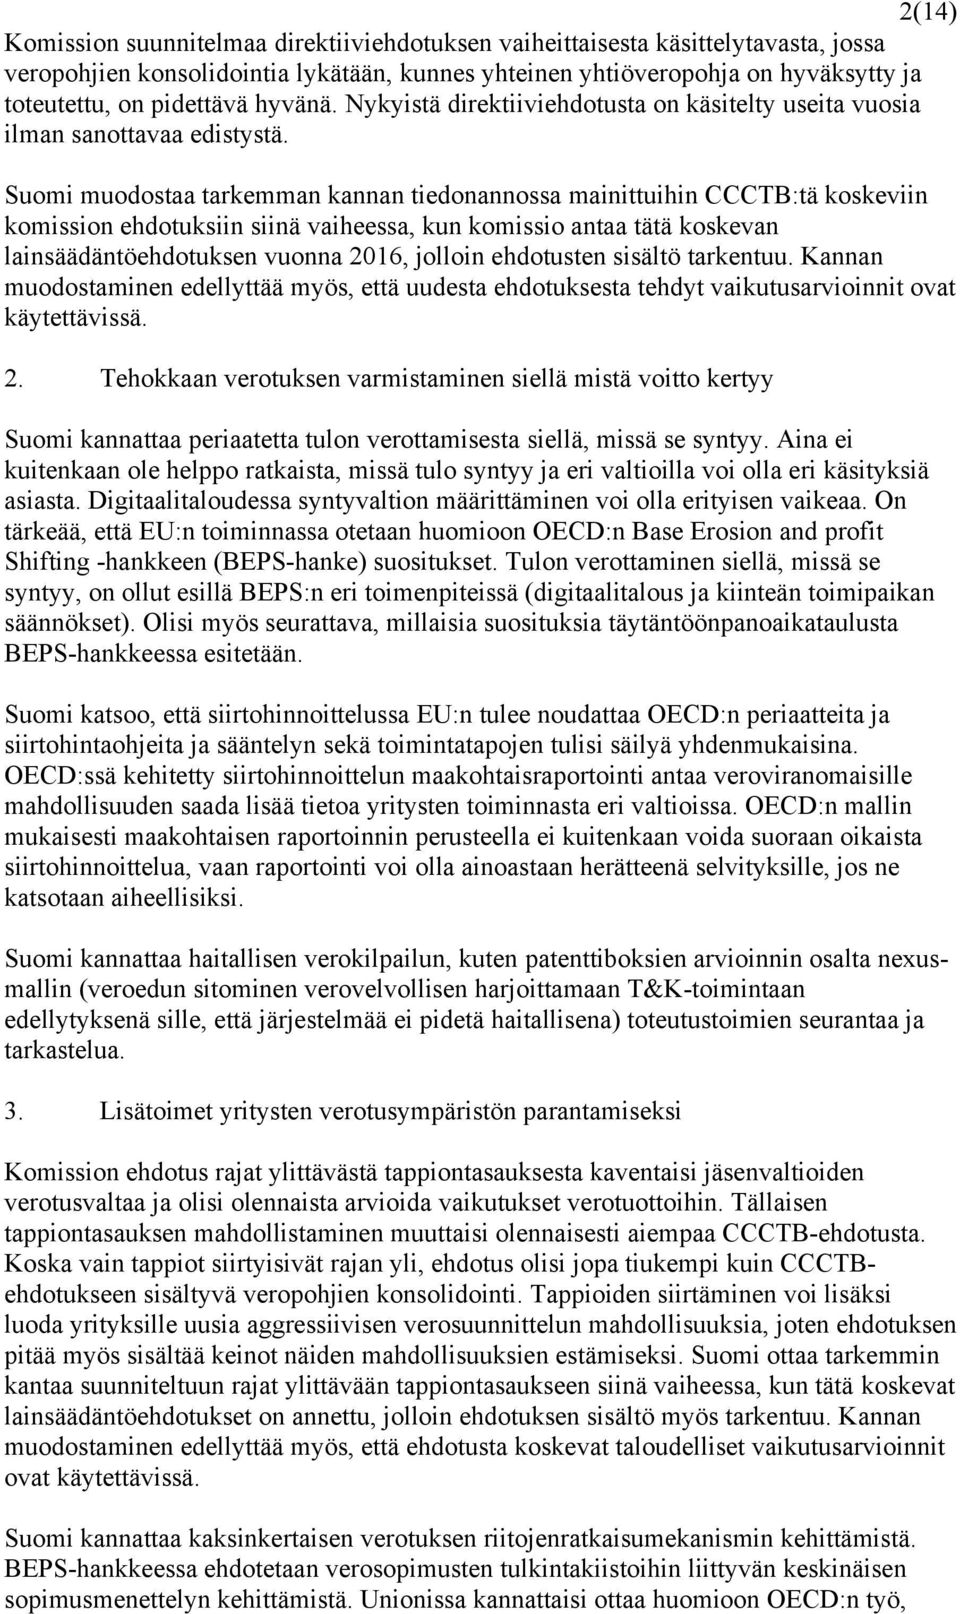 Suomi muodostaa tarkemman kannan tiedonannossa mainittuihin CCCTB:tä koskeviin komission ehdotuksiin siinä vaiheessa, kun komissio antaa tätä koskevan lainsäädäntöehdotuksen vuonna 2016, jolloin